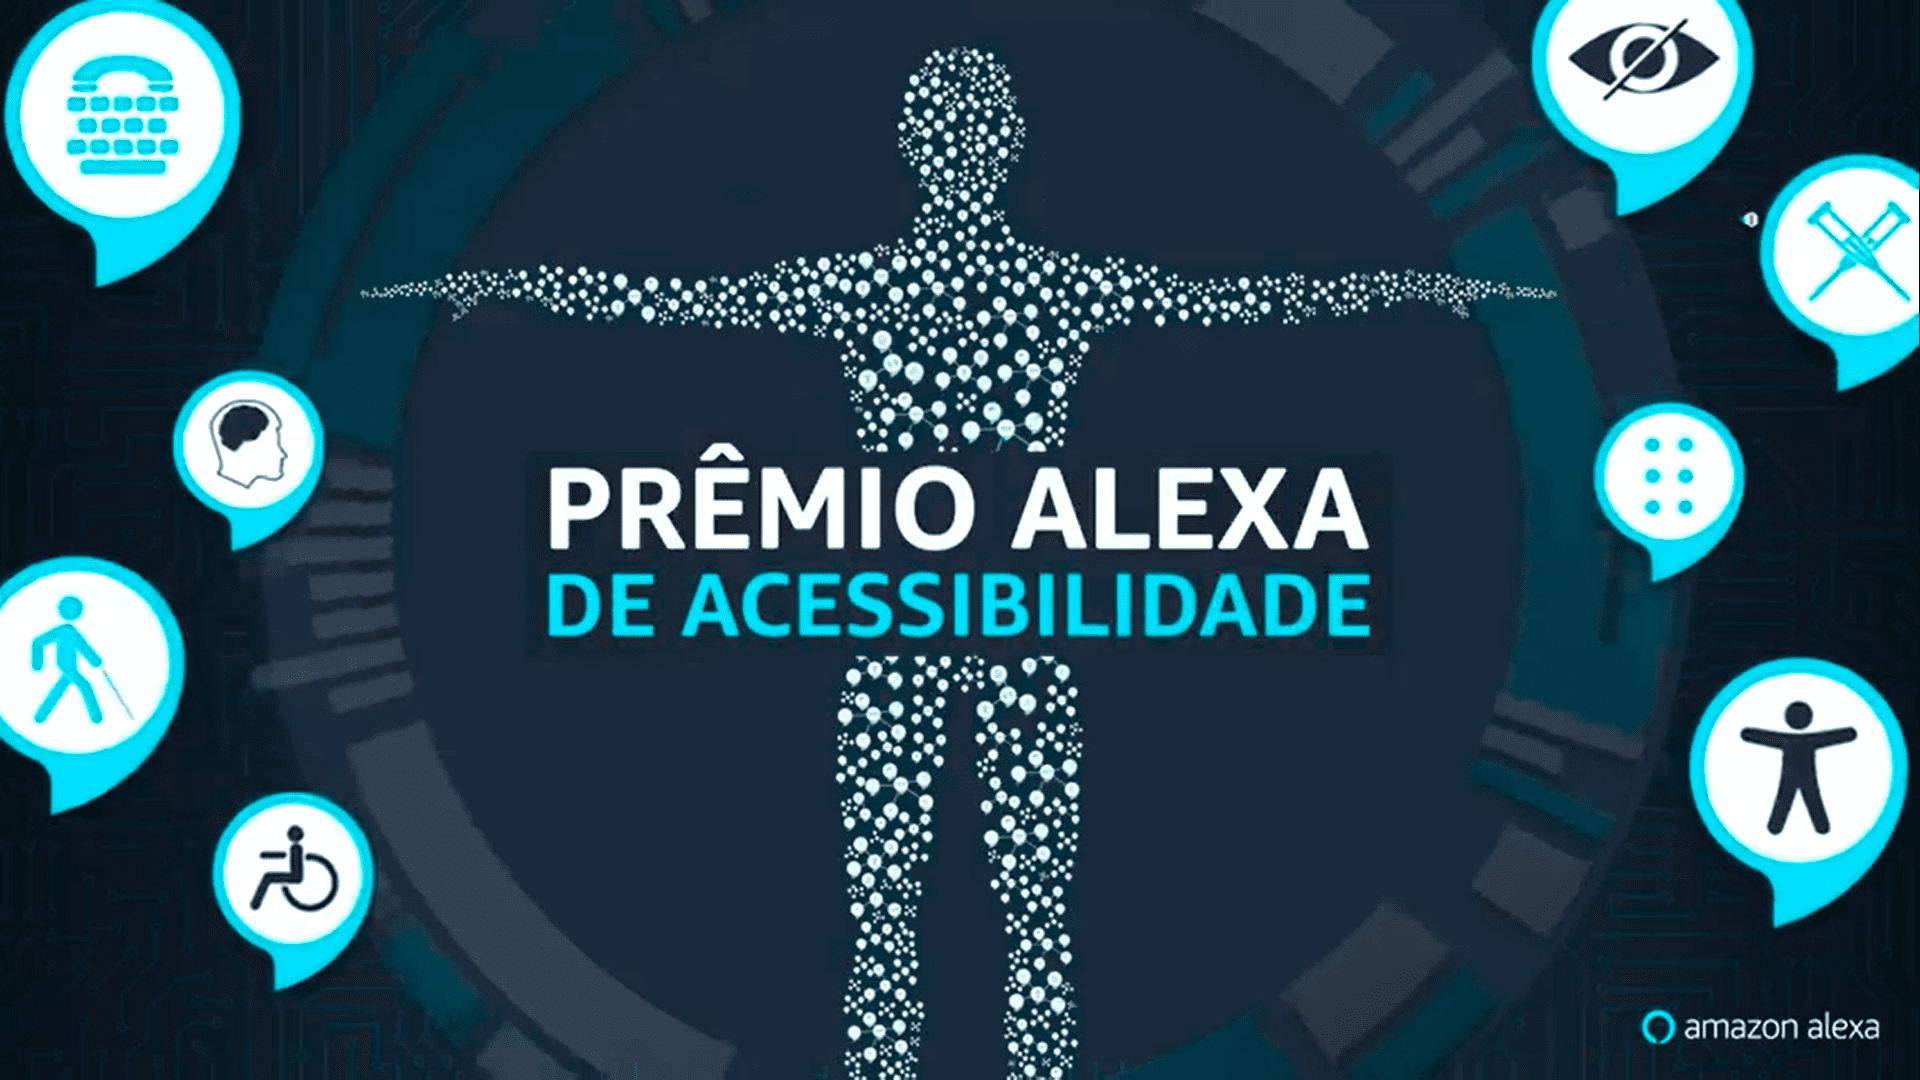 Banner do Prêmio Alexa de Acessibilidade revela os 10 finalistas